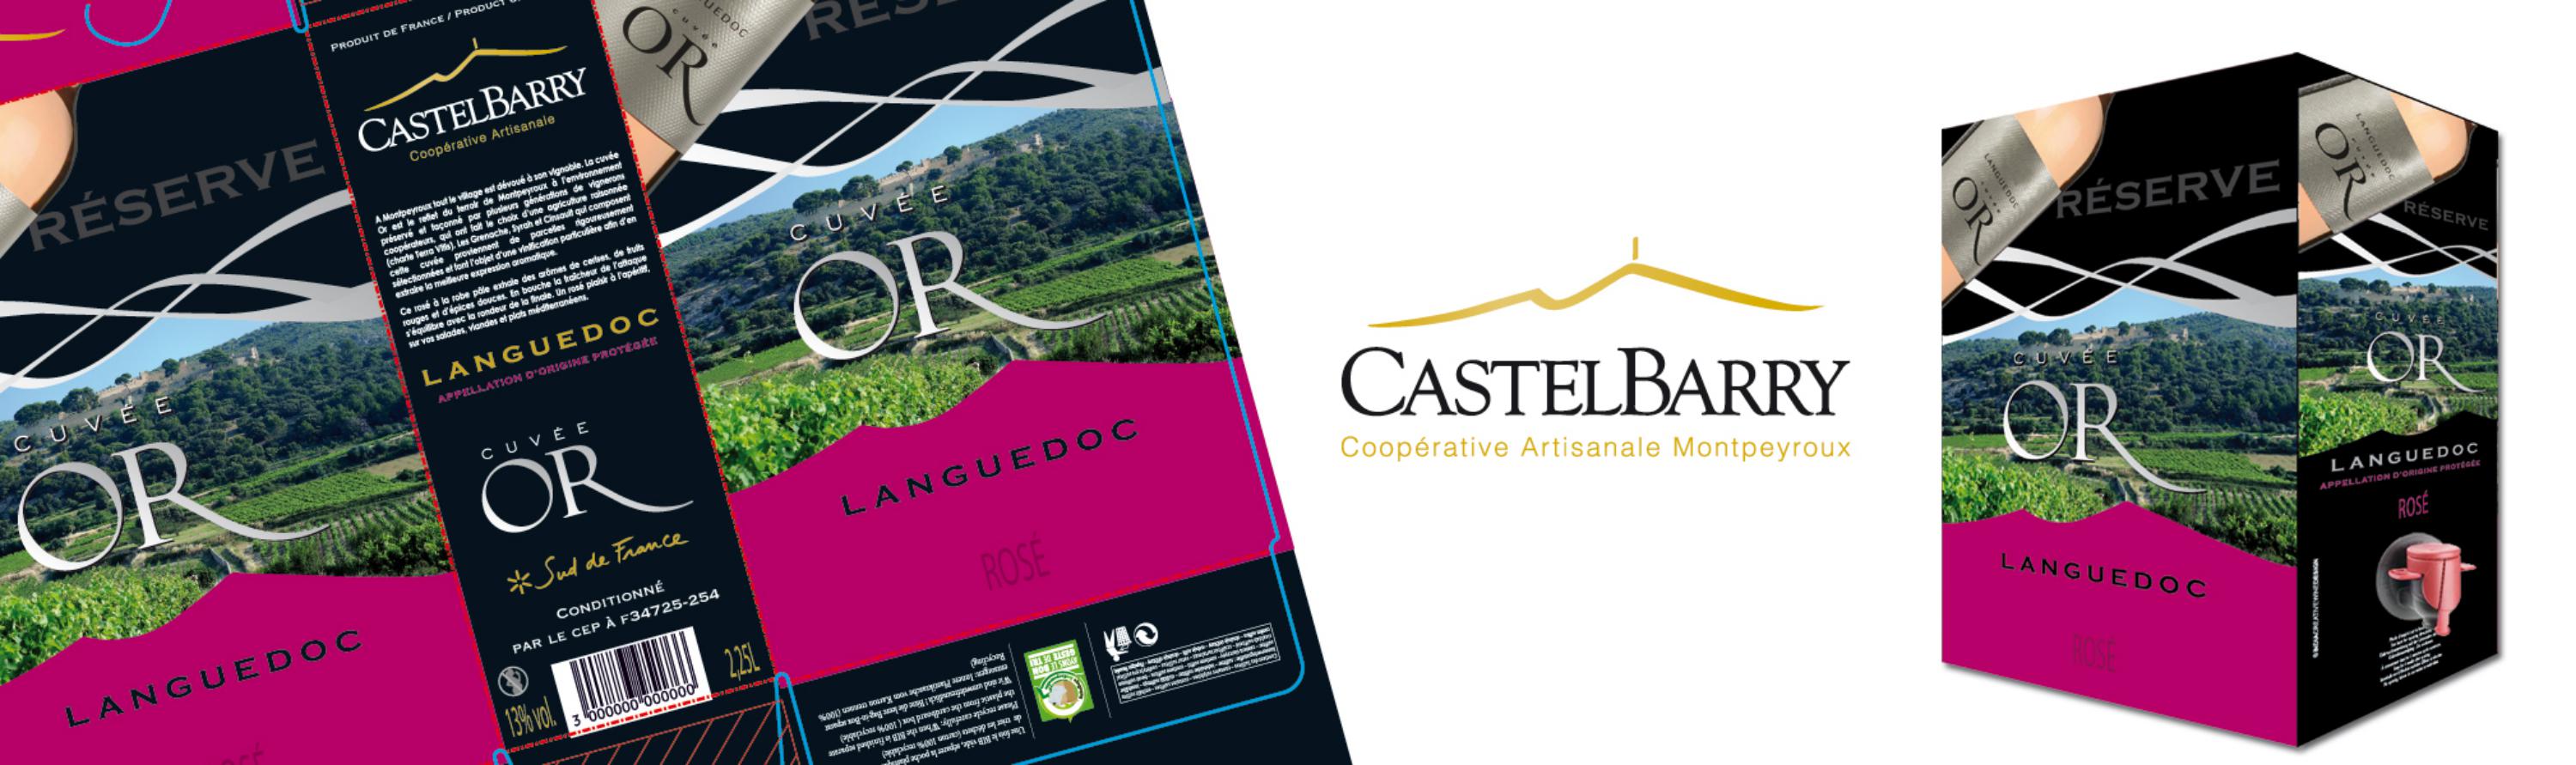 Bag-in-box Castelbarry réserve rosé